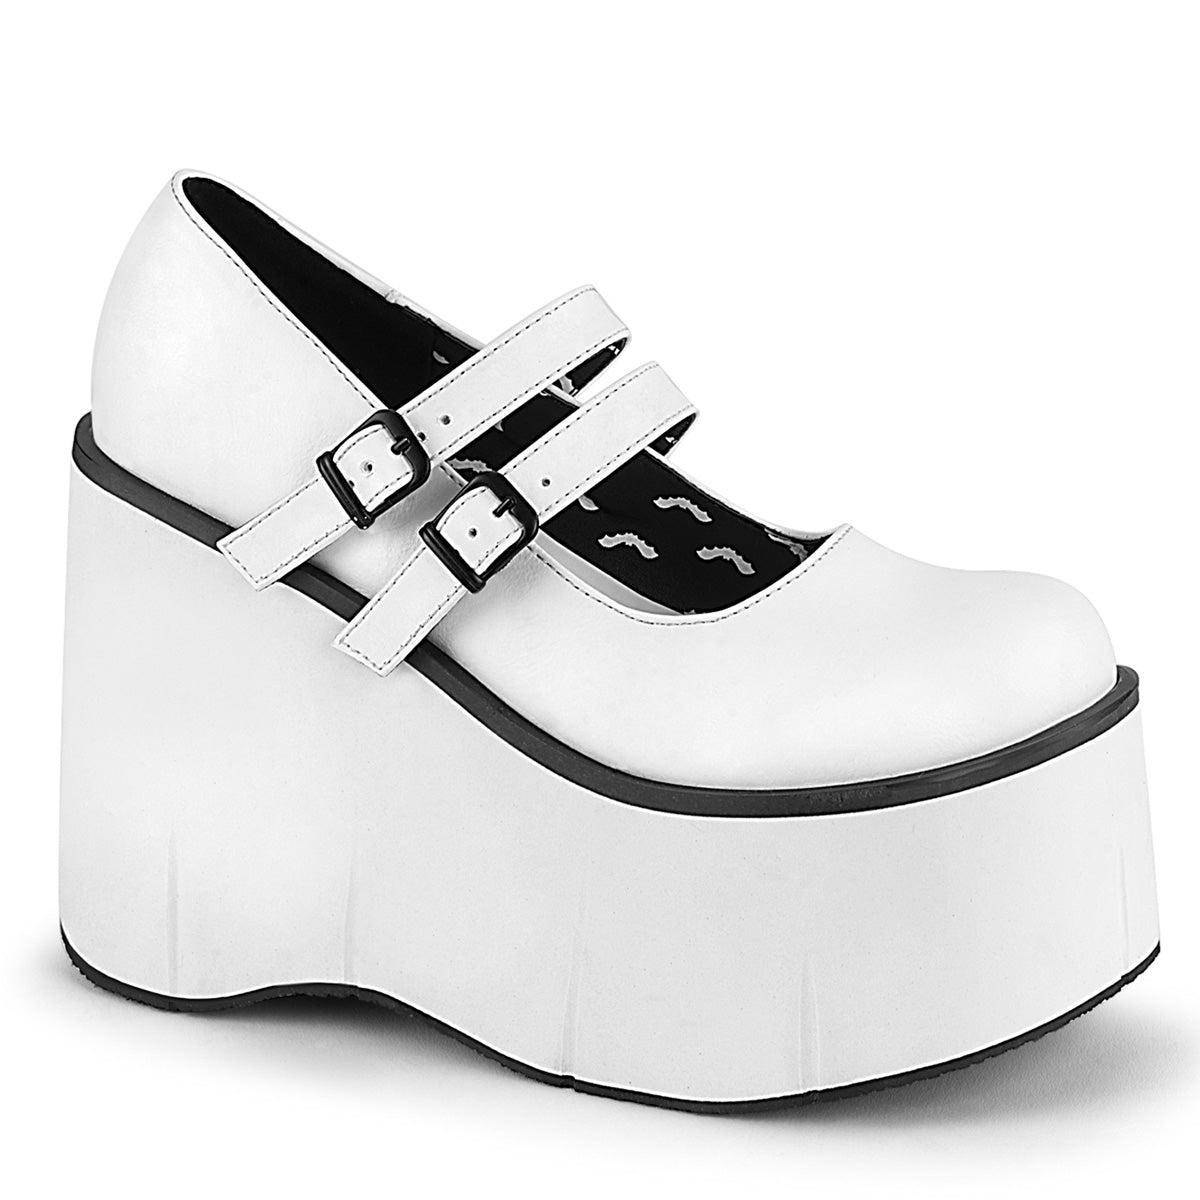 Mary Jane Style White Platform Shoes